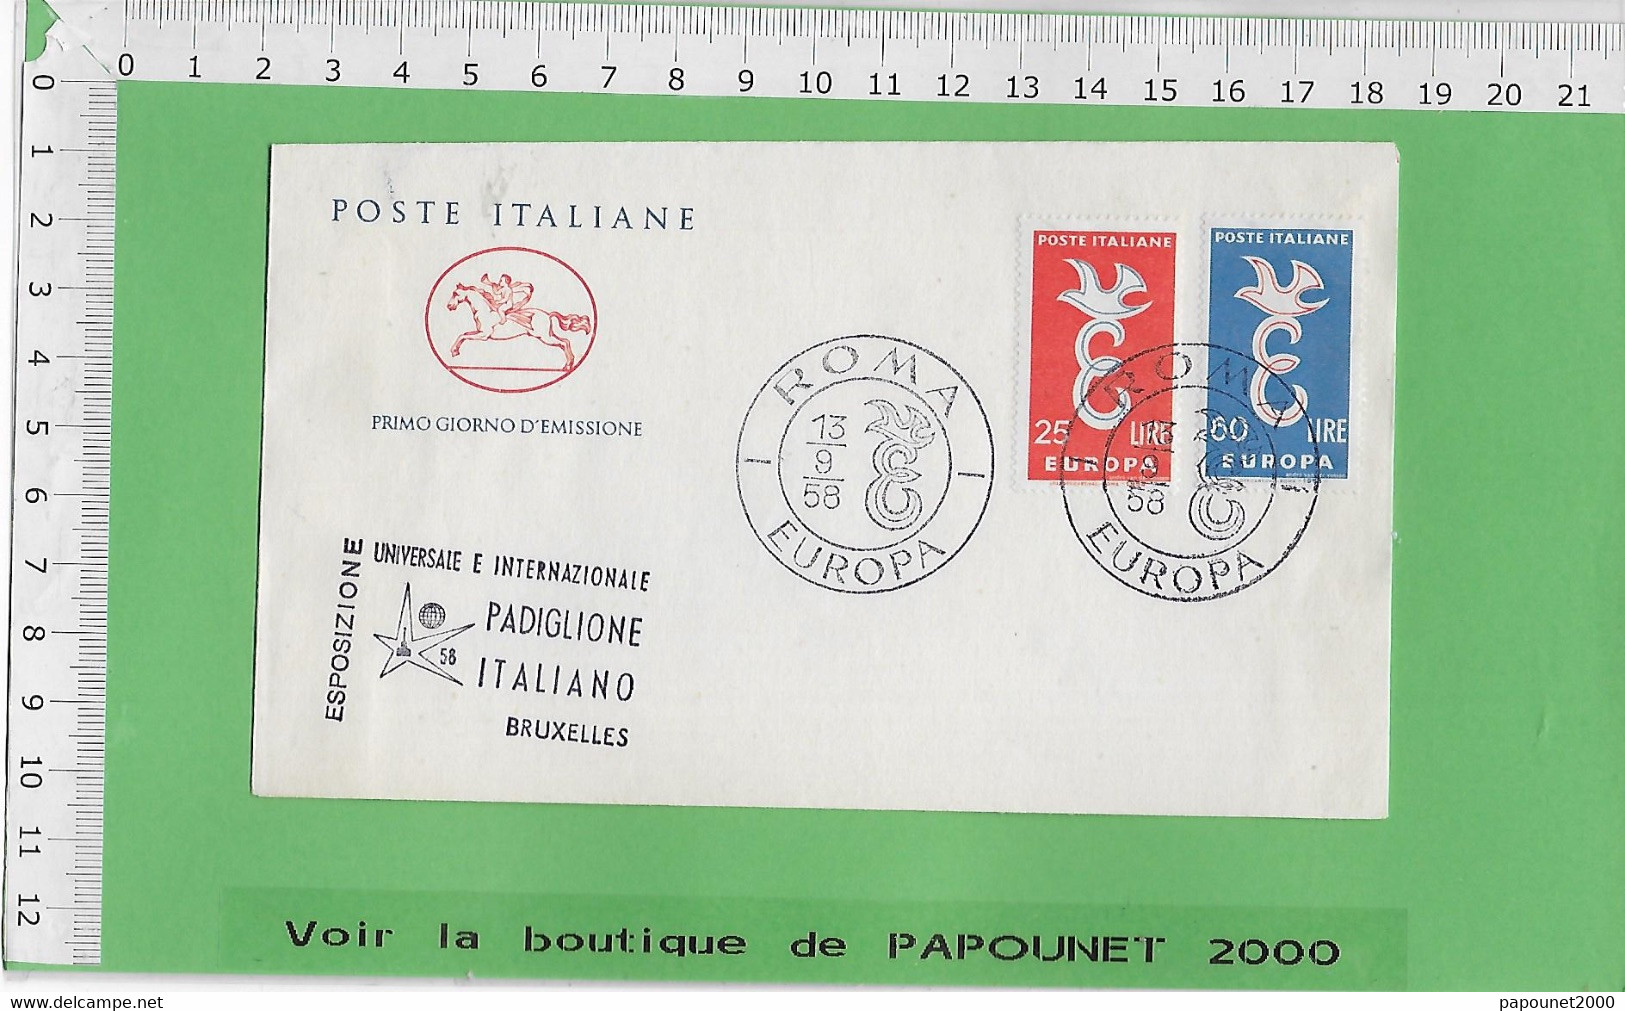 02578 - E BE04 1000-EXPO 58 : Timbre*Enveloppe / PRIMO GIORNO D EMISSIONE: PAVILLON ITALIEN - 1958 – Brussel (België)